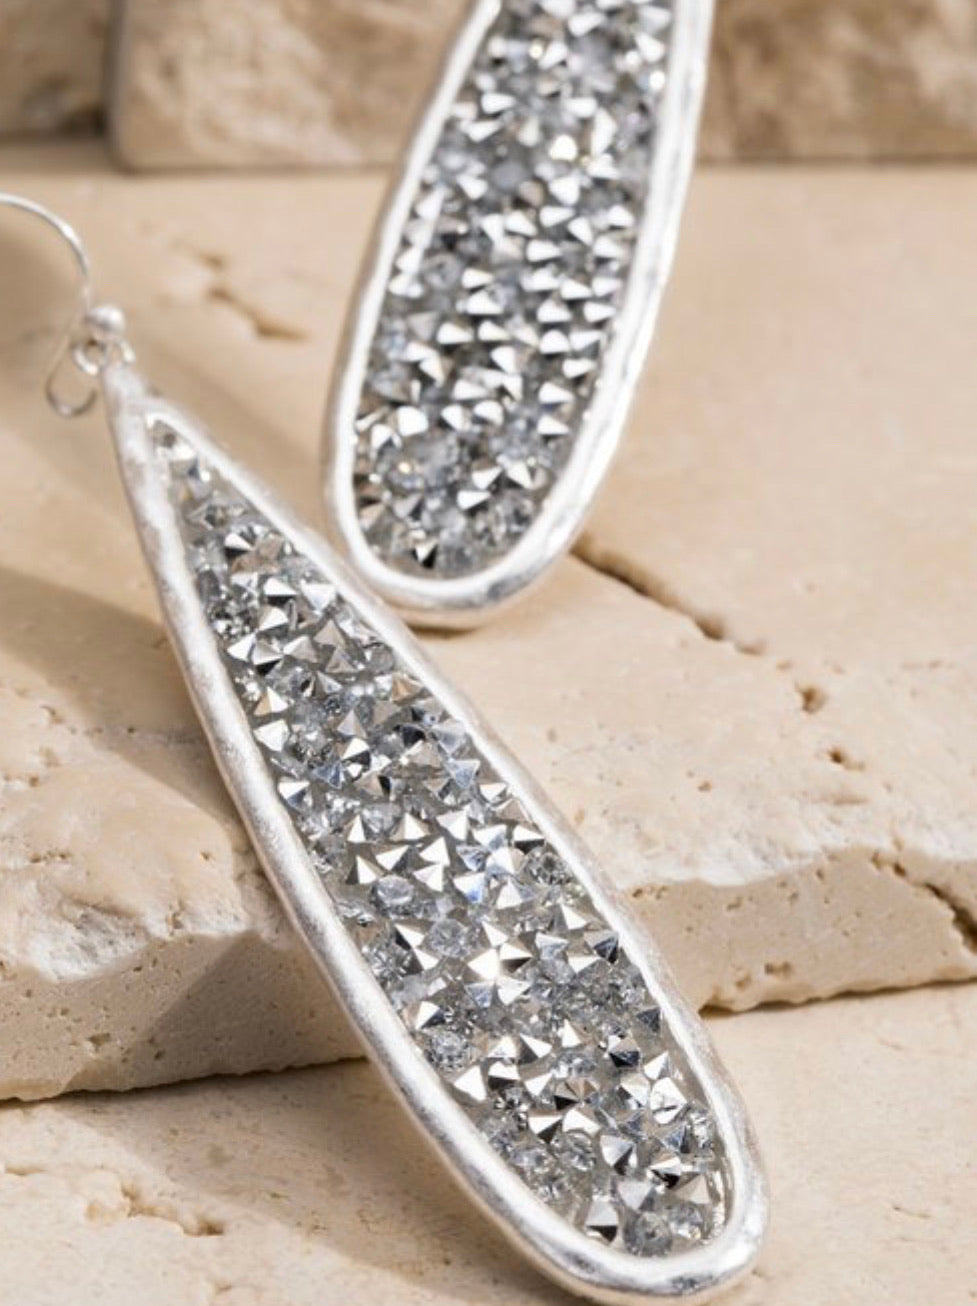 Glitter Stone Earrings